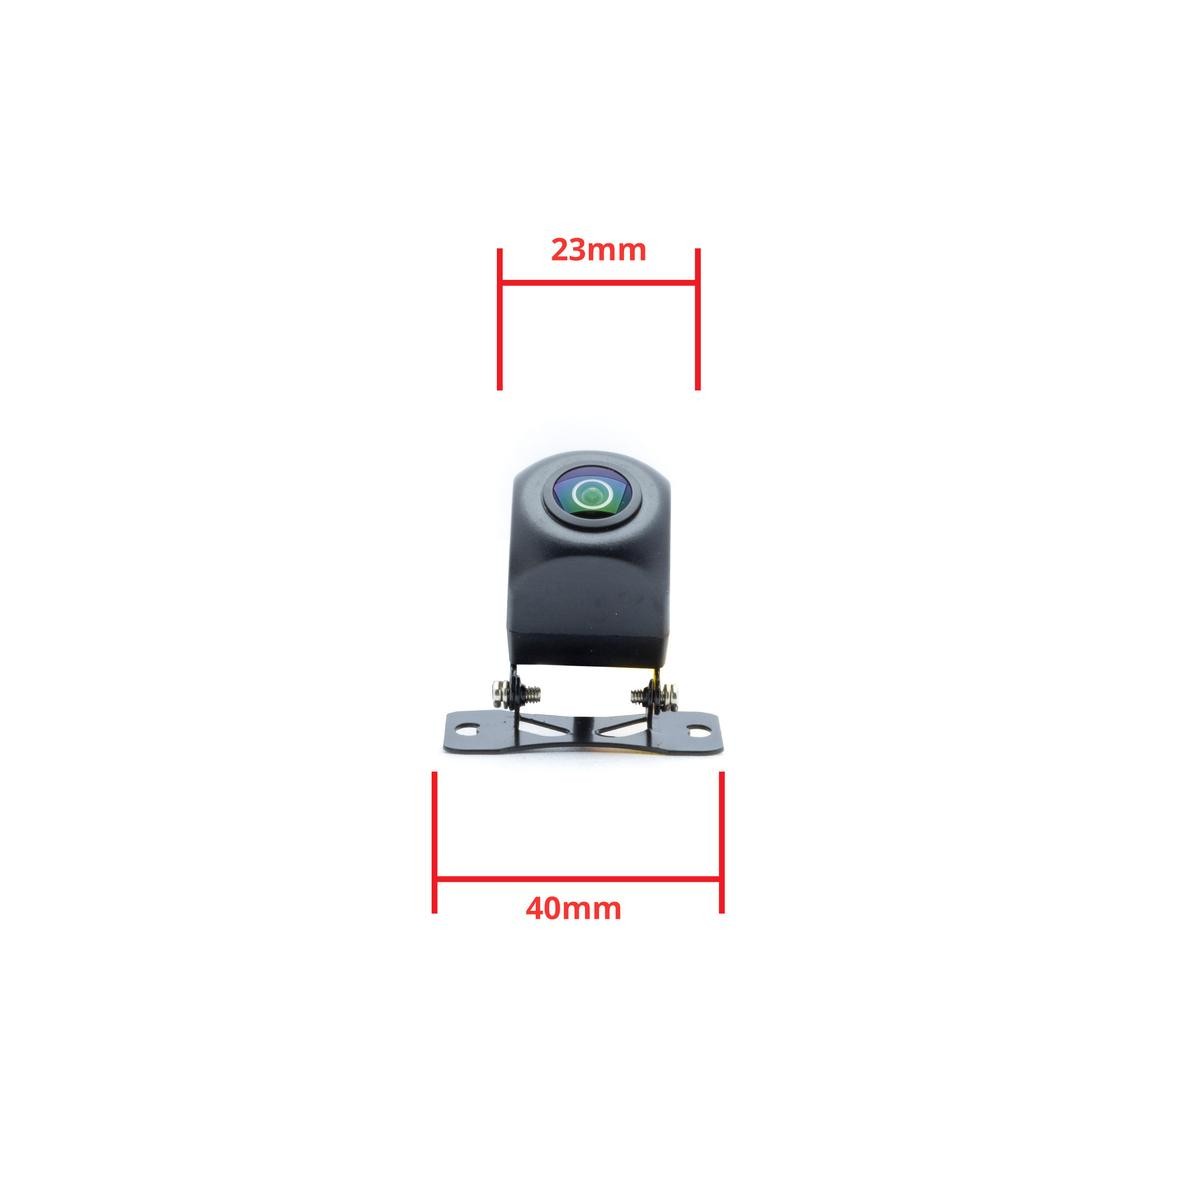 EPP052 Rückfahrkamera Bildschirmanzeige: LCD